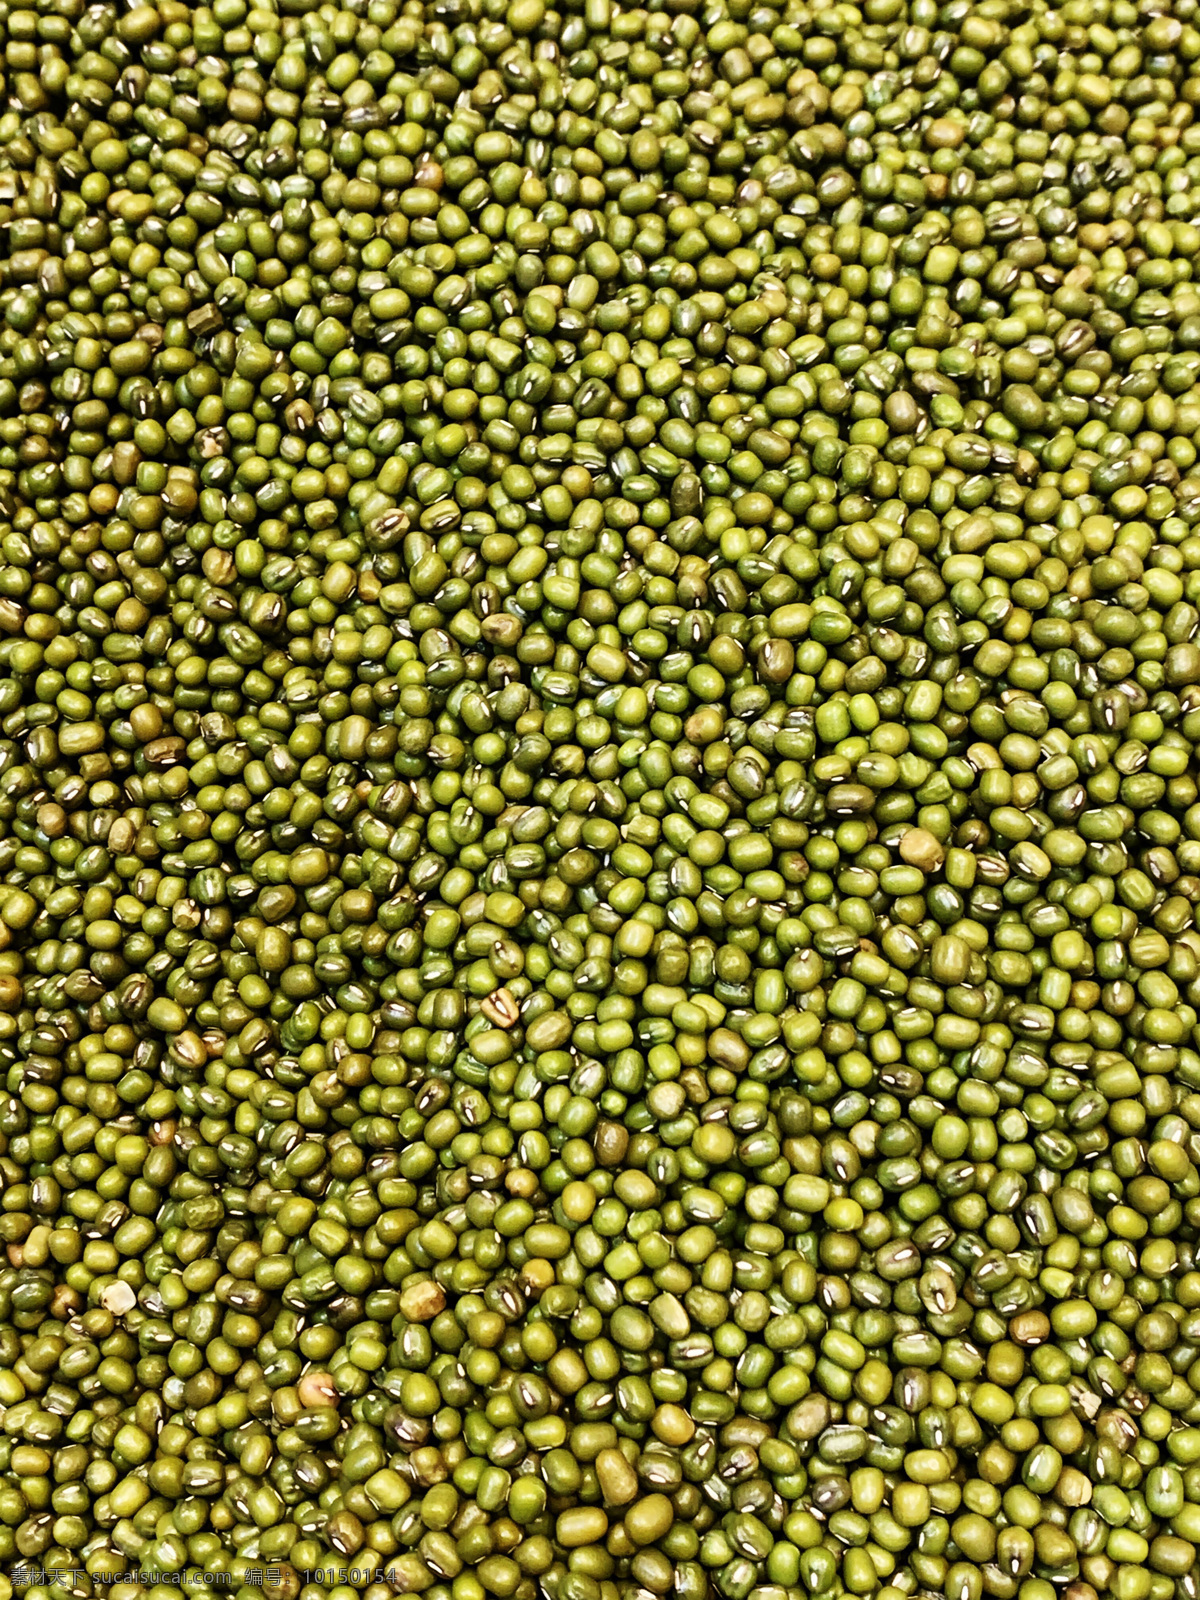 绿豆图片 豆 豆子 绿豆 五谷杂粮 干货 农产品 农家豆子 生物世界 蔬菜